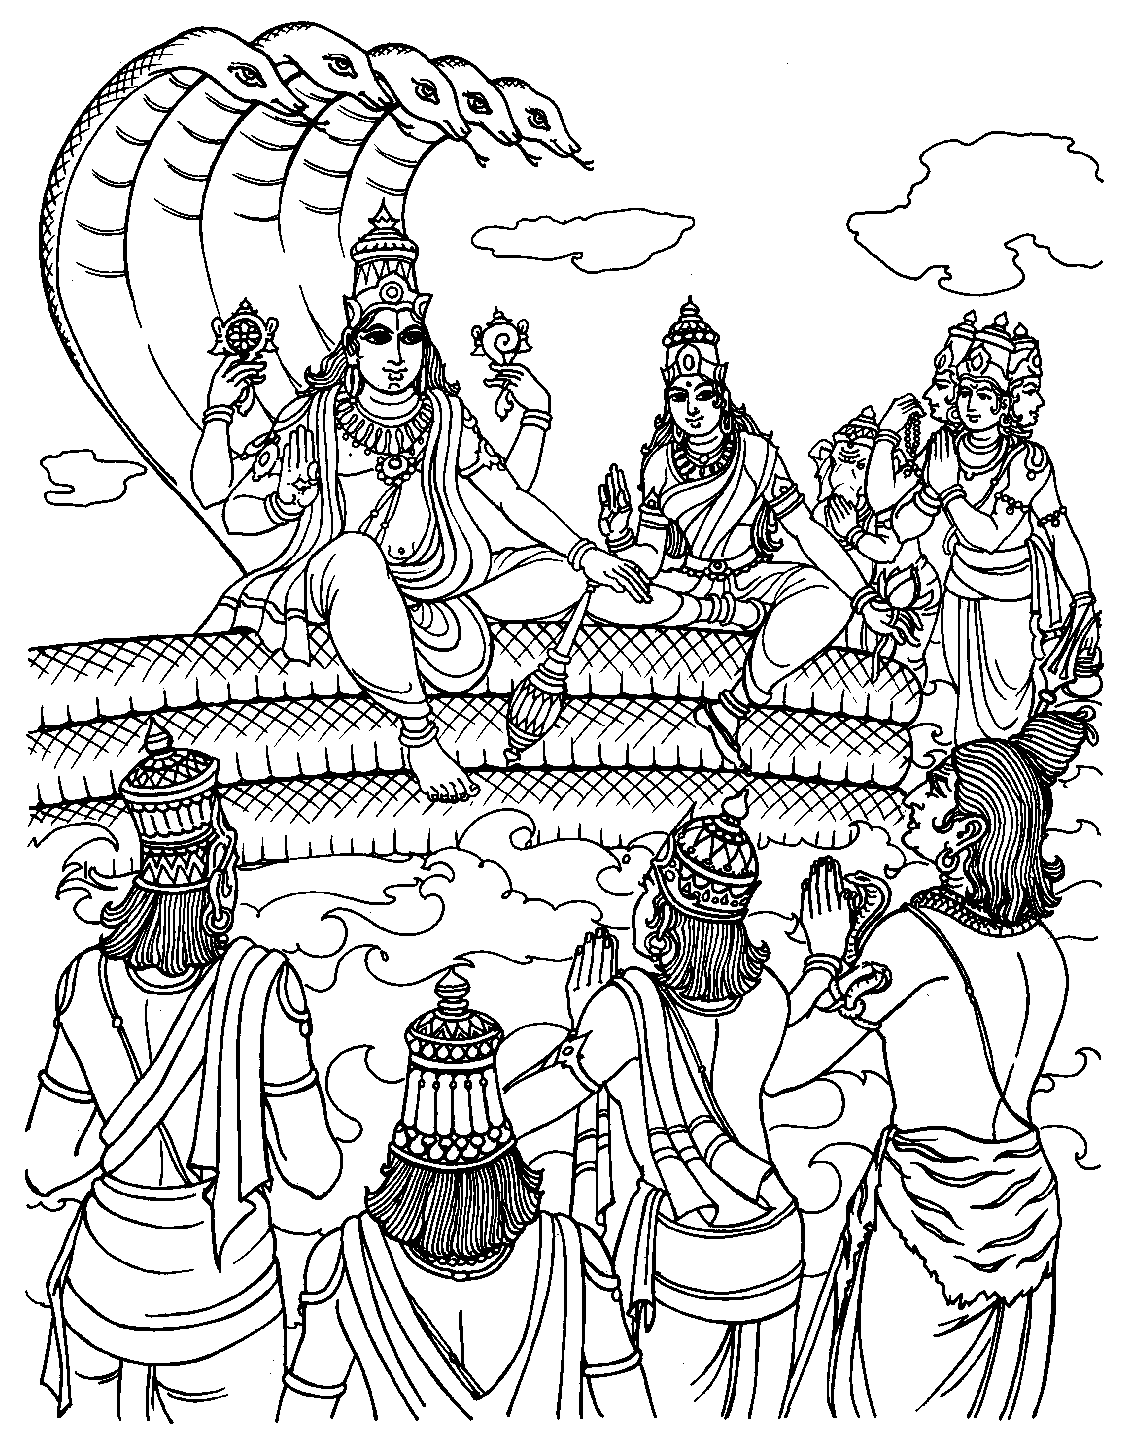 Pagina da colorare di Vishnu che prende forma umana: Rama, per visitare gli uomini